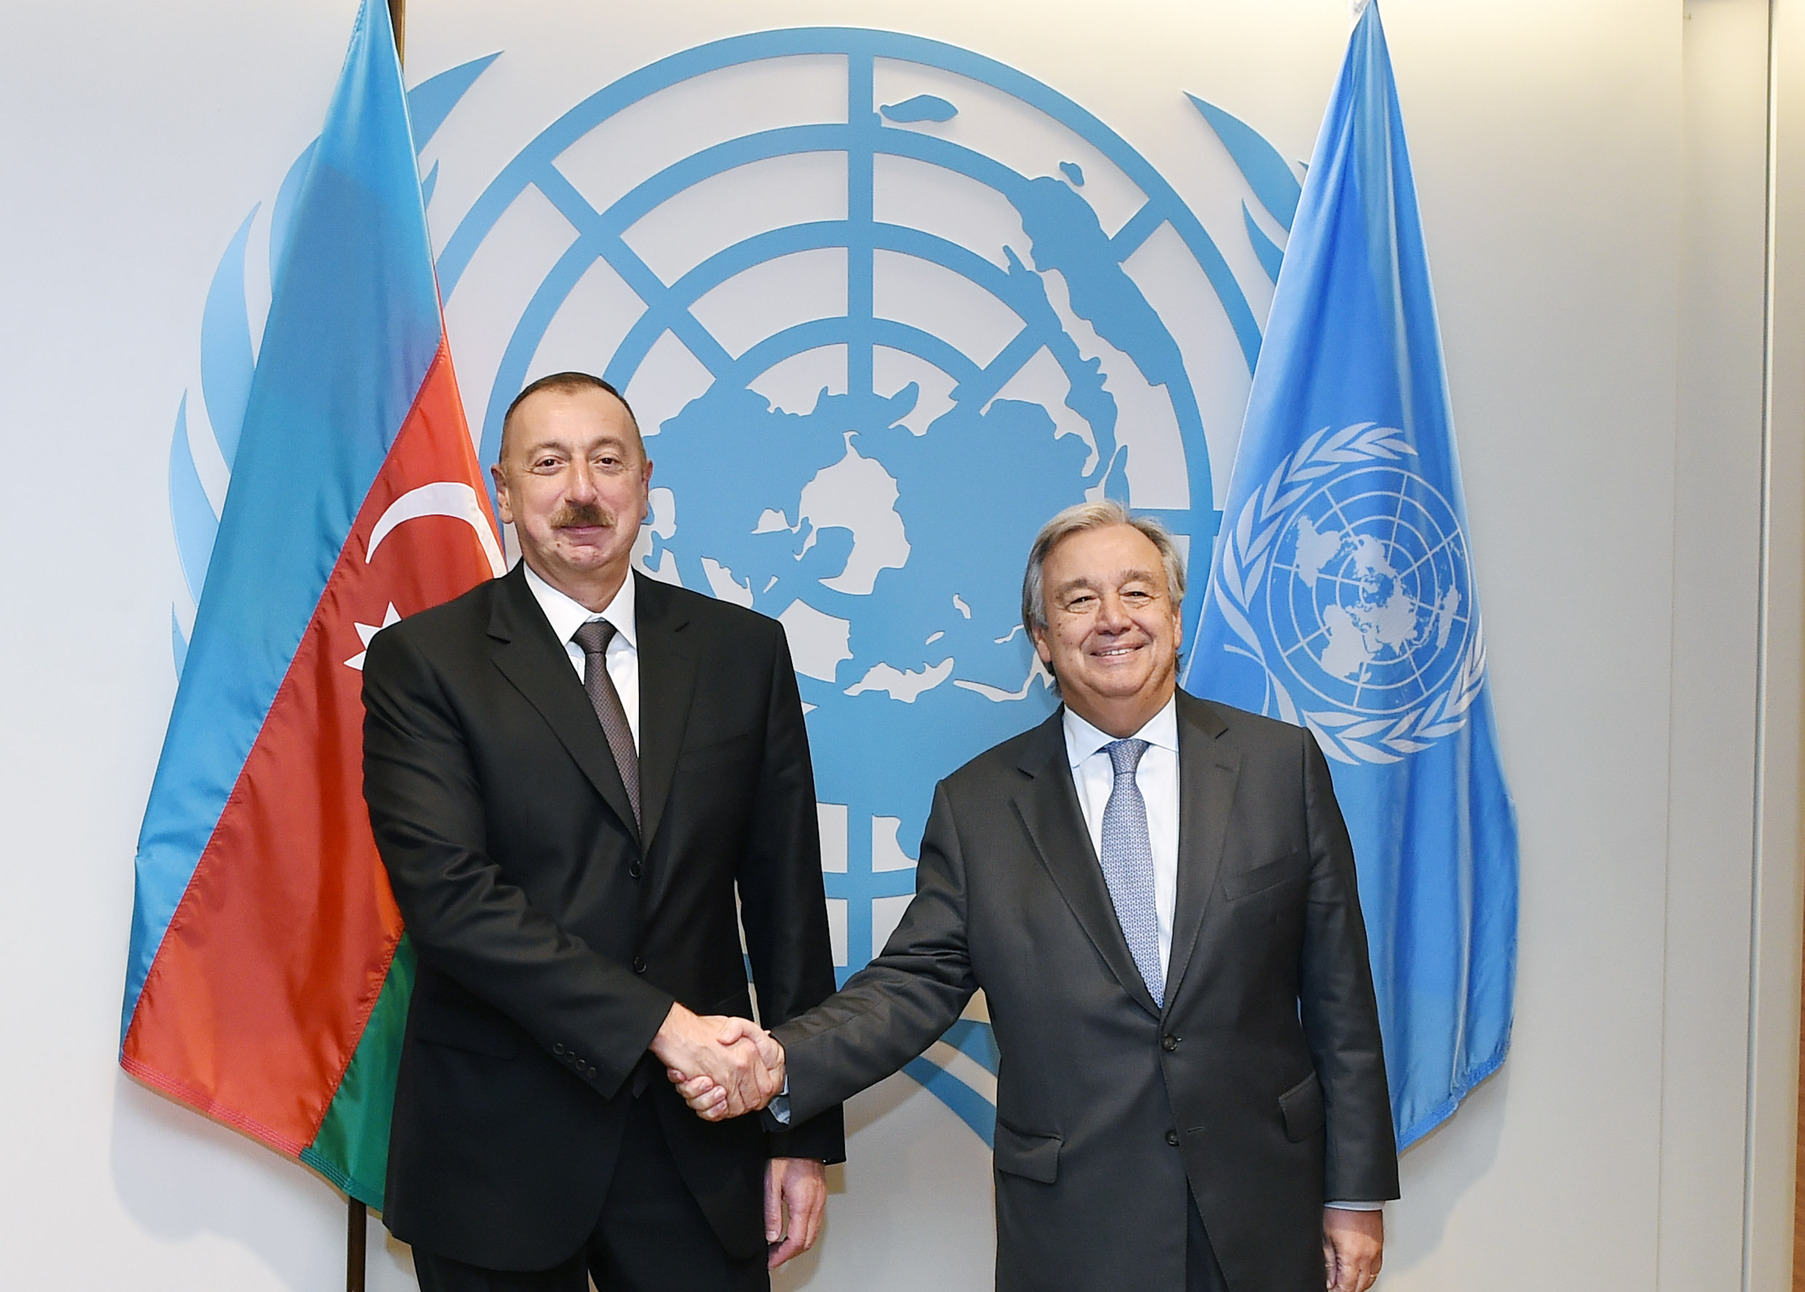 Состоялся телефонный разговор между президентом Азербайджана и генсеком ООН